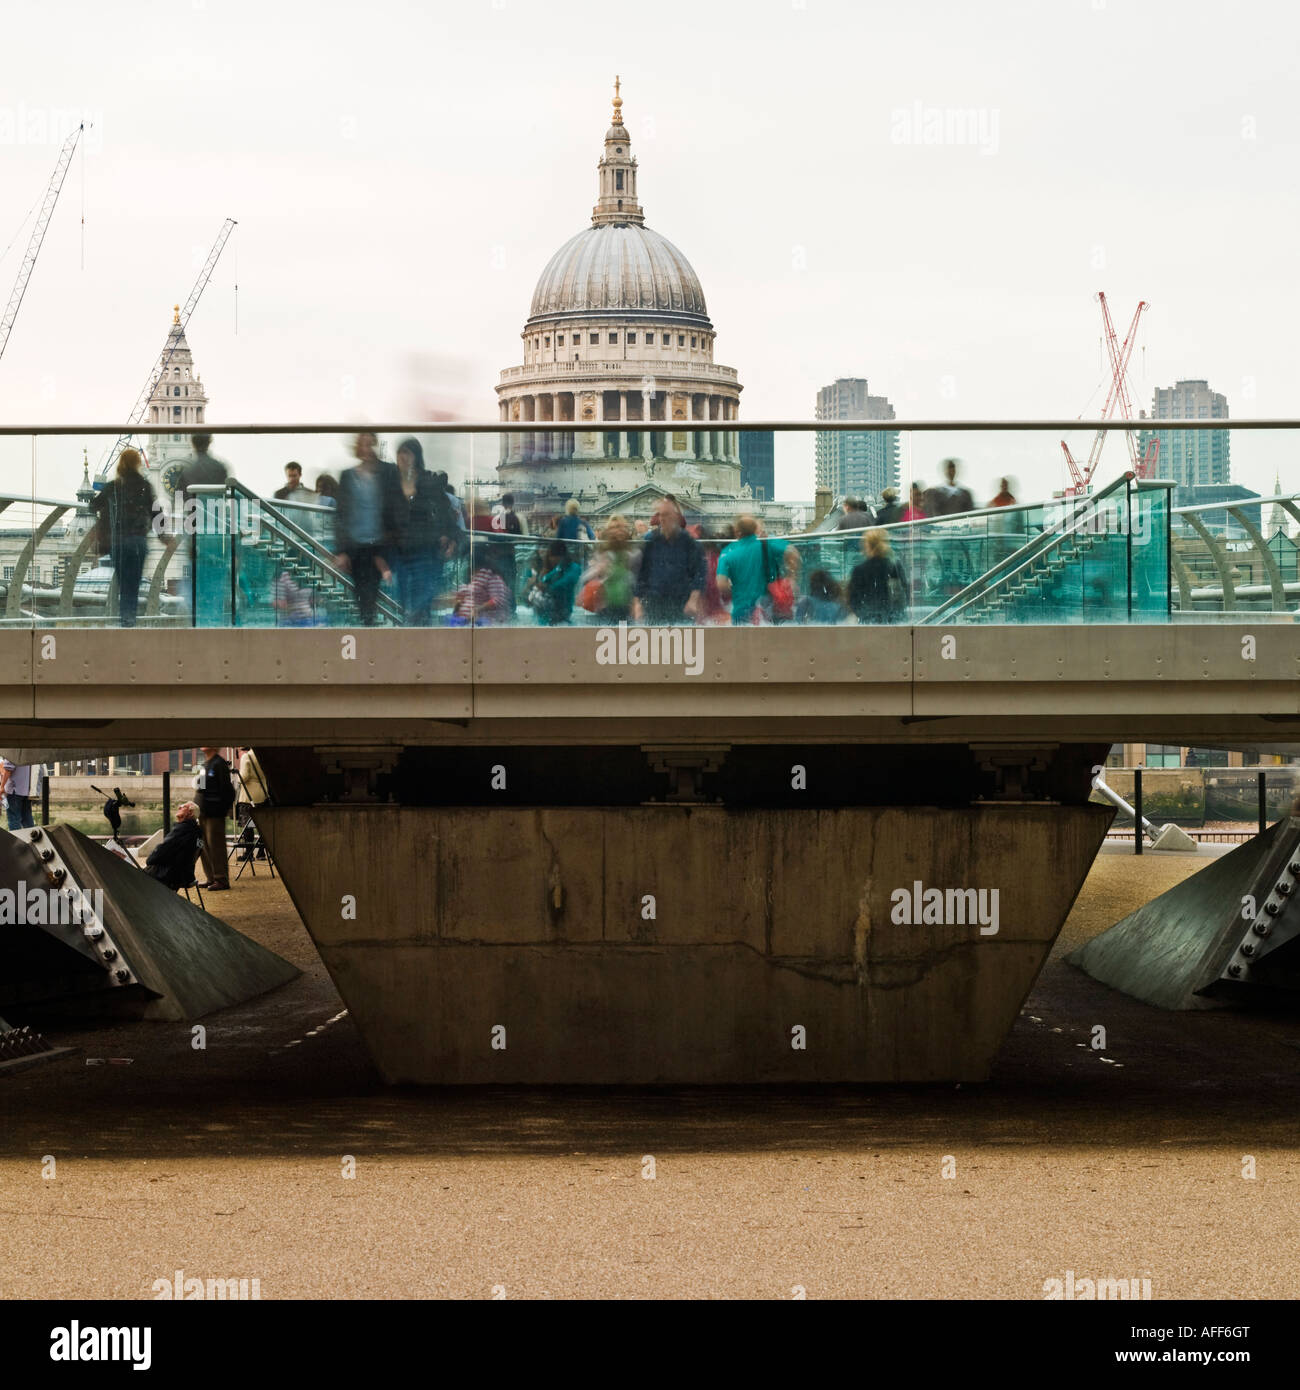 St Pauls Millennium Bridge City Londres monochrome modèle ne libération comme vue arrière, flou, la distance ne signifie aucun personnes reconnaissables Banque D'Images